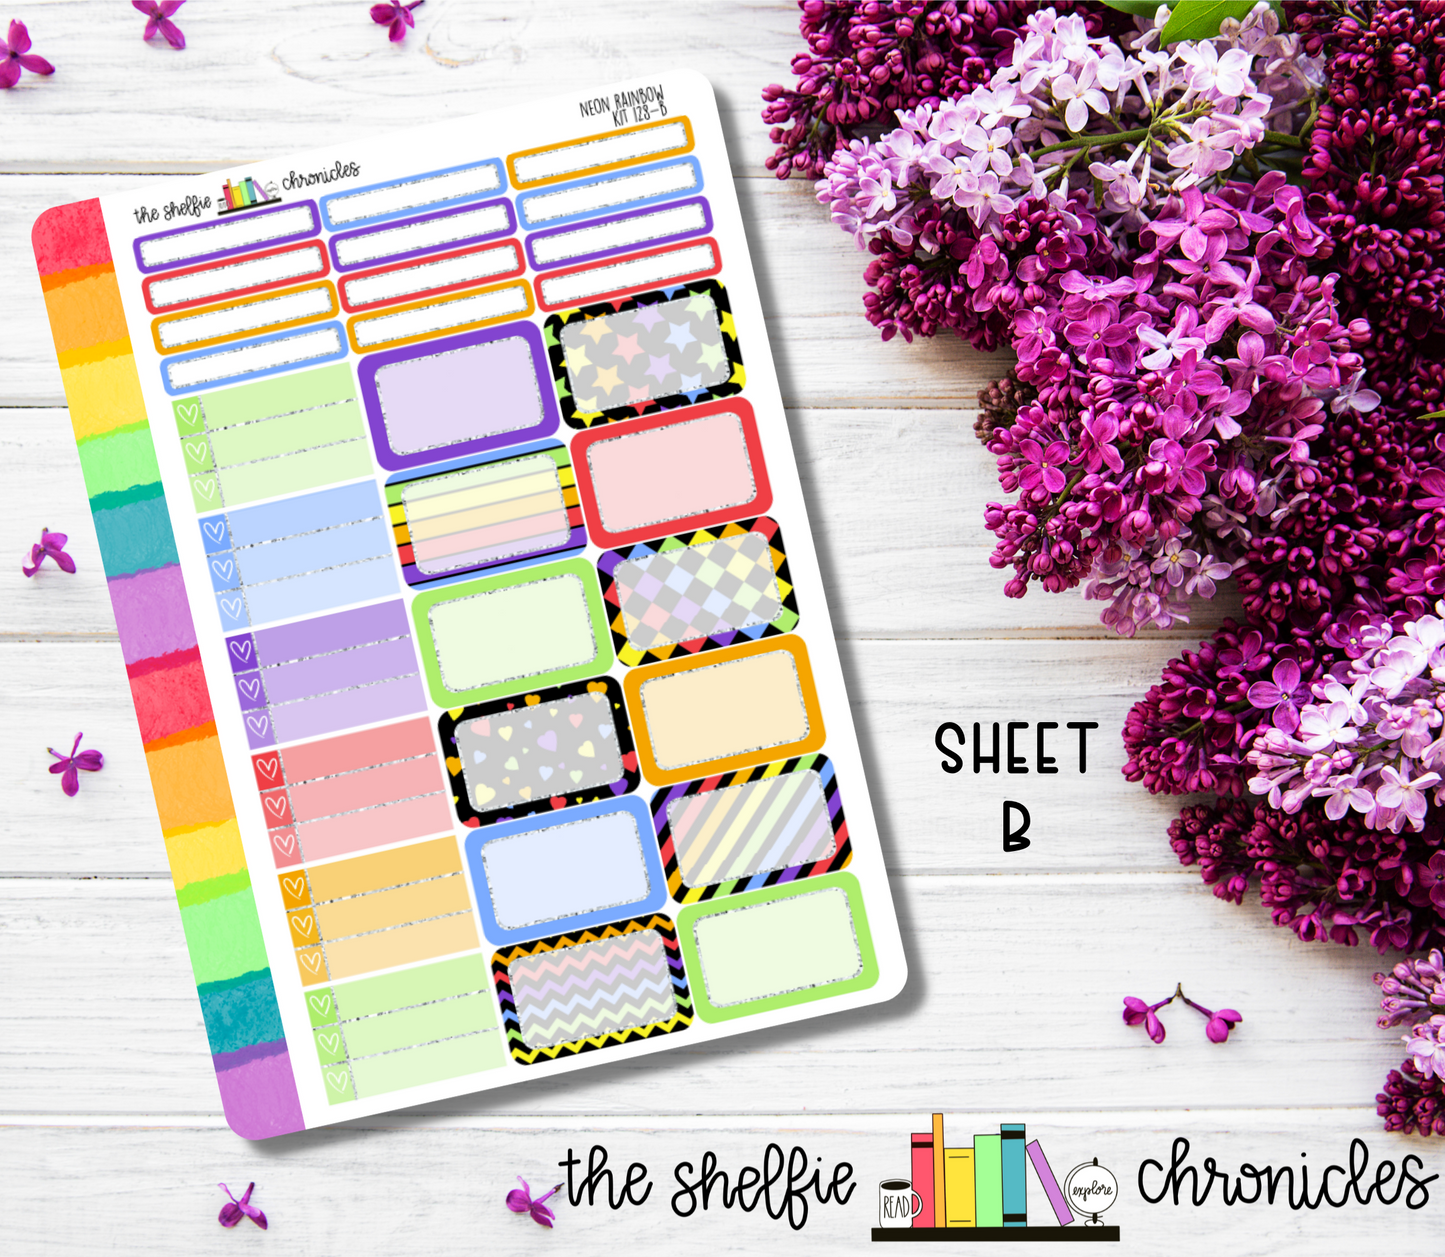 Kit 128 - Neon Rainbow Weekly Kit - Die Cut Stickers - Repositionable Paper